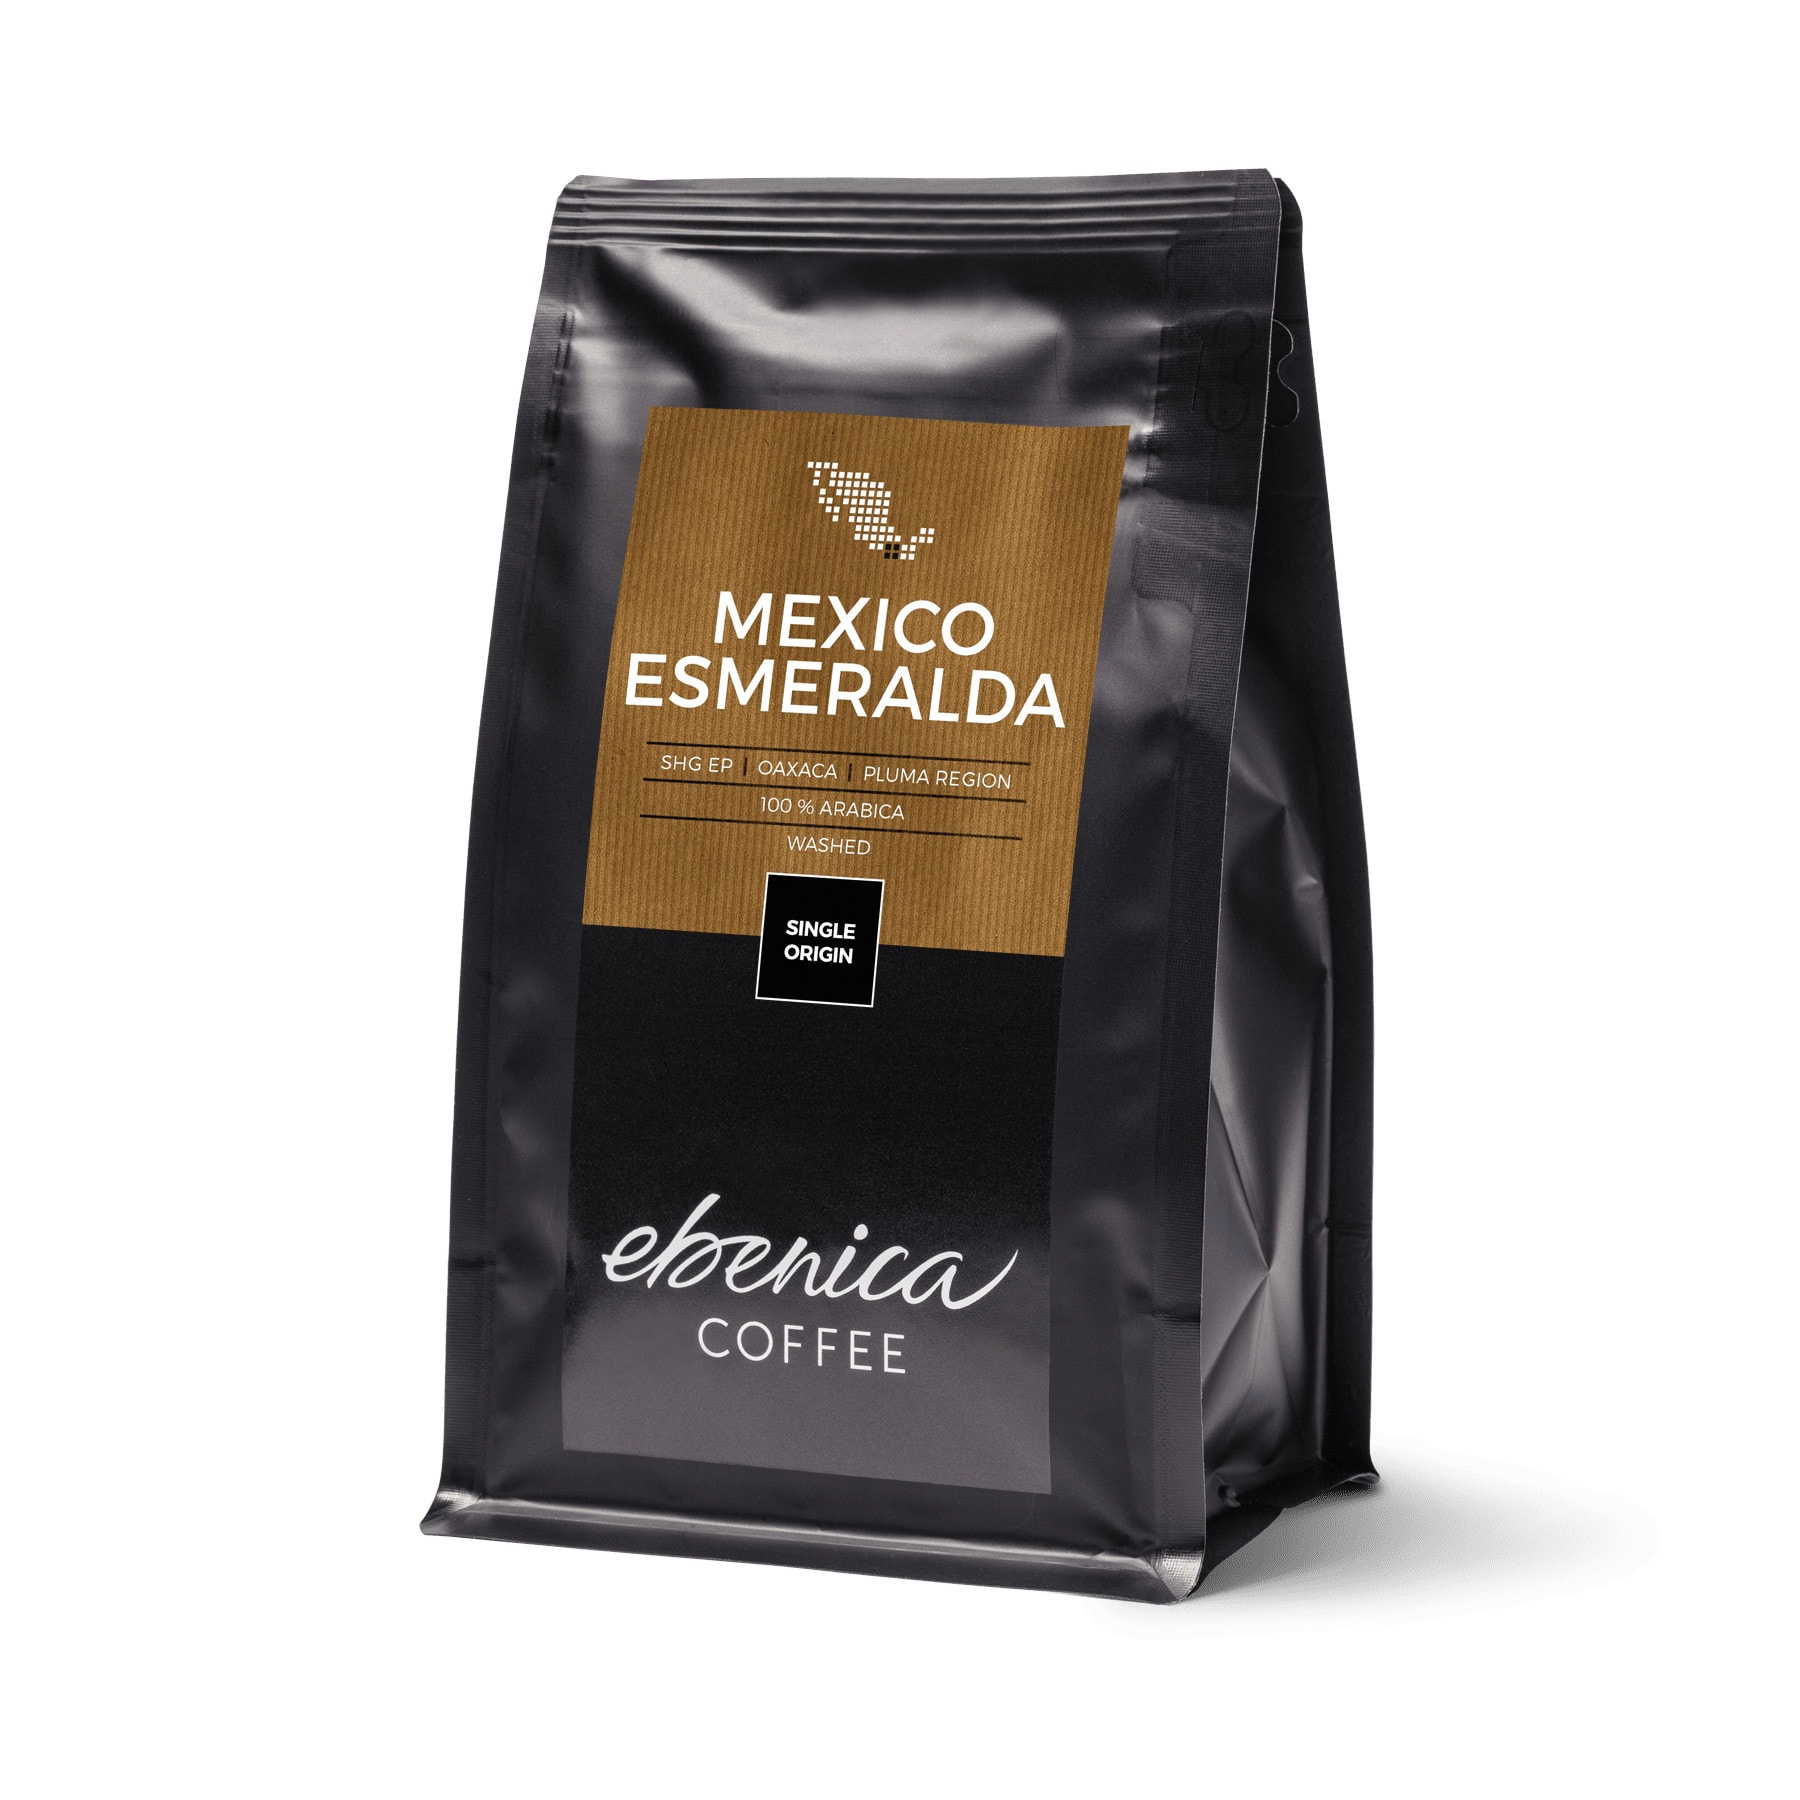 Szemes kávé Ebenica Mexico Esmeralda - 220g - díszcsomagolásban